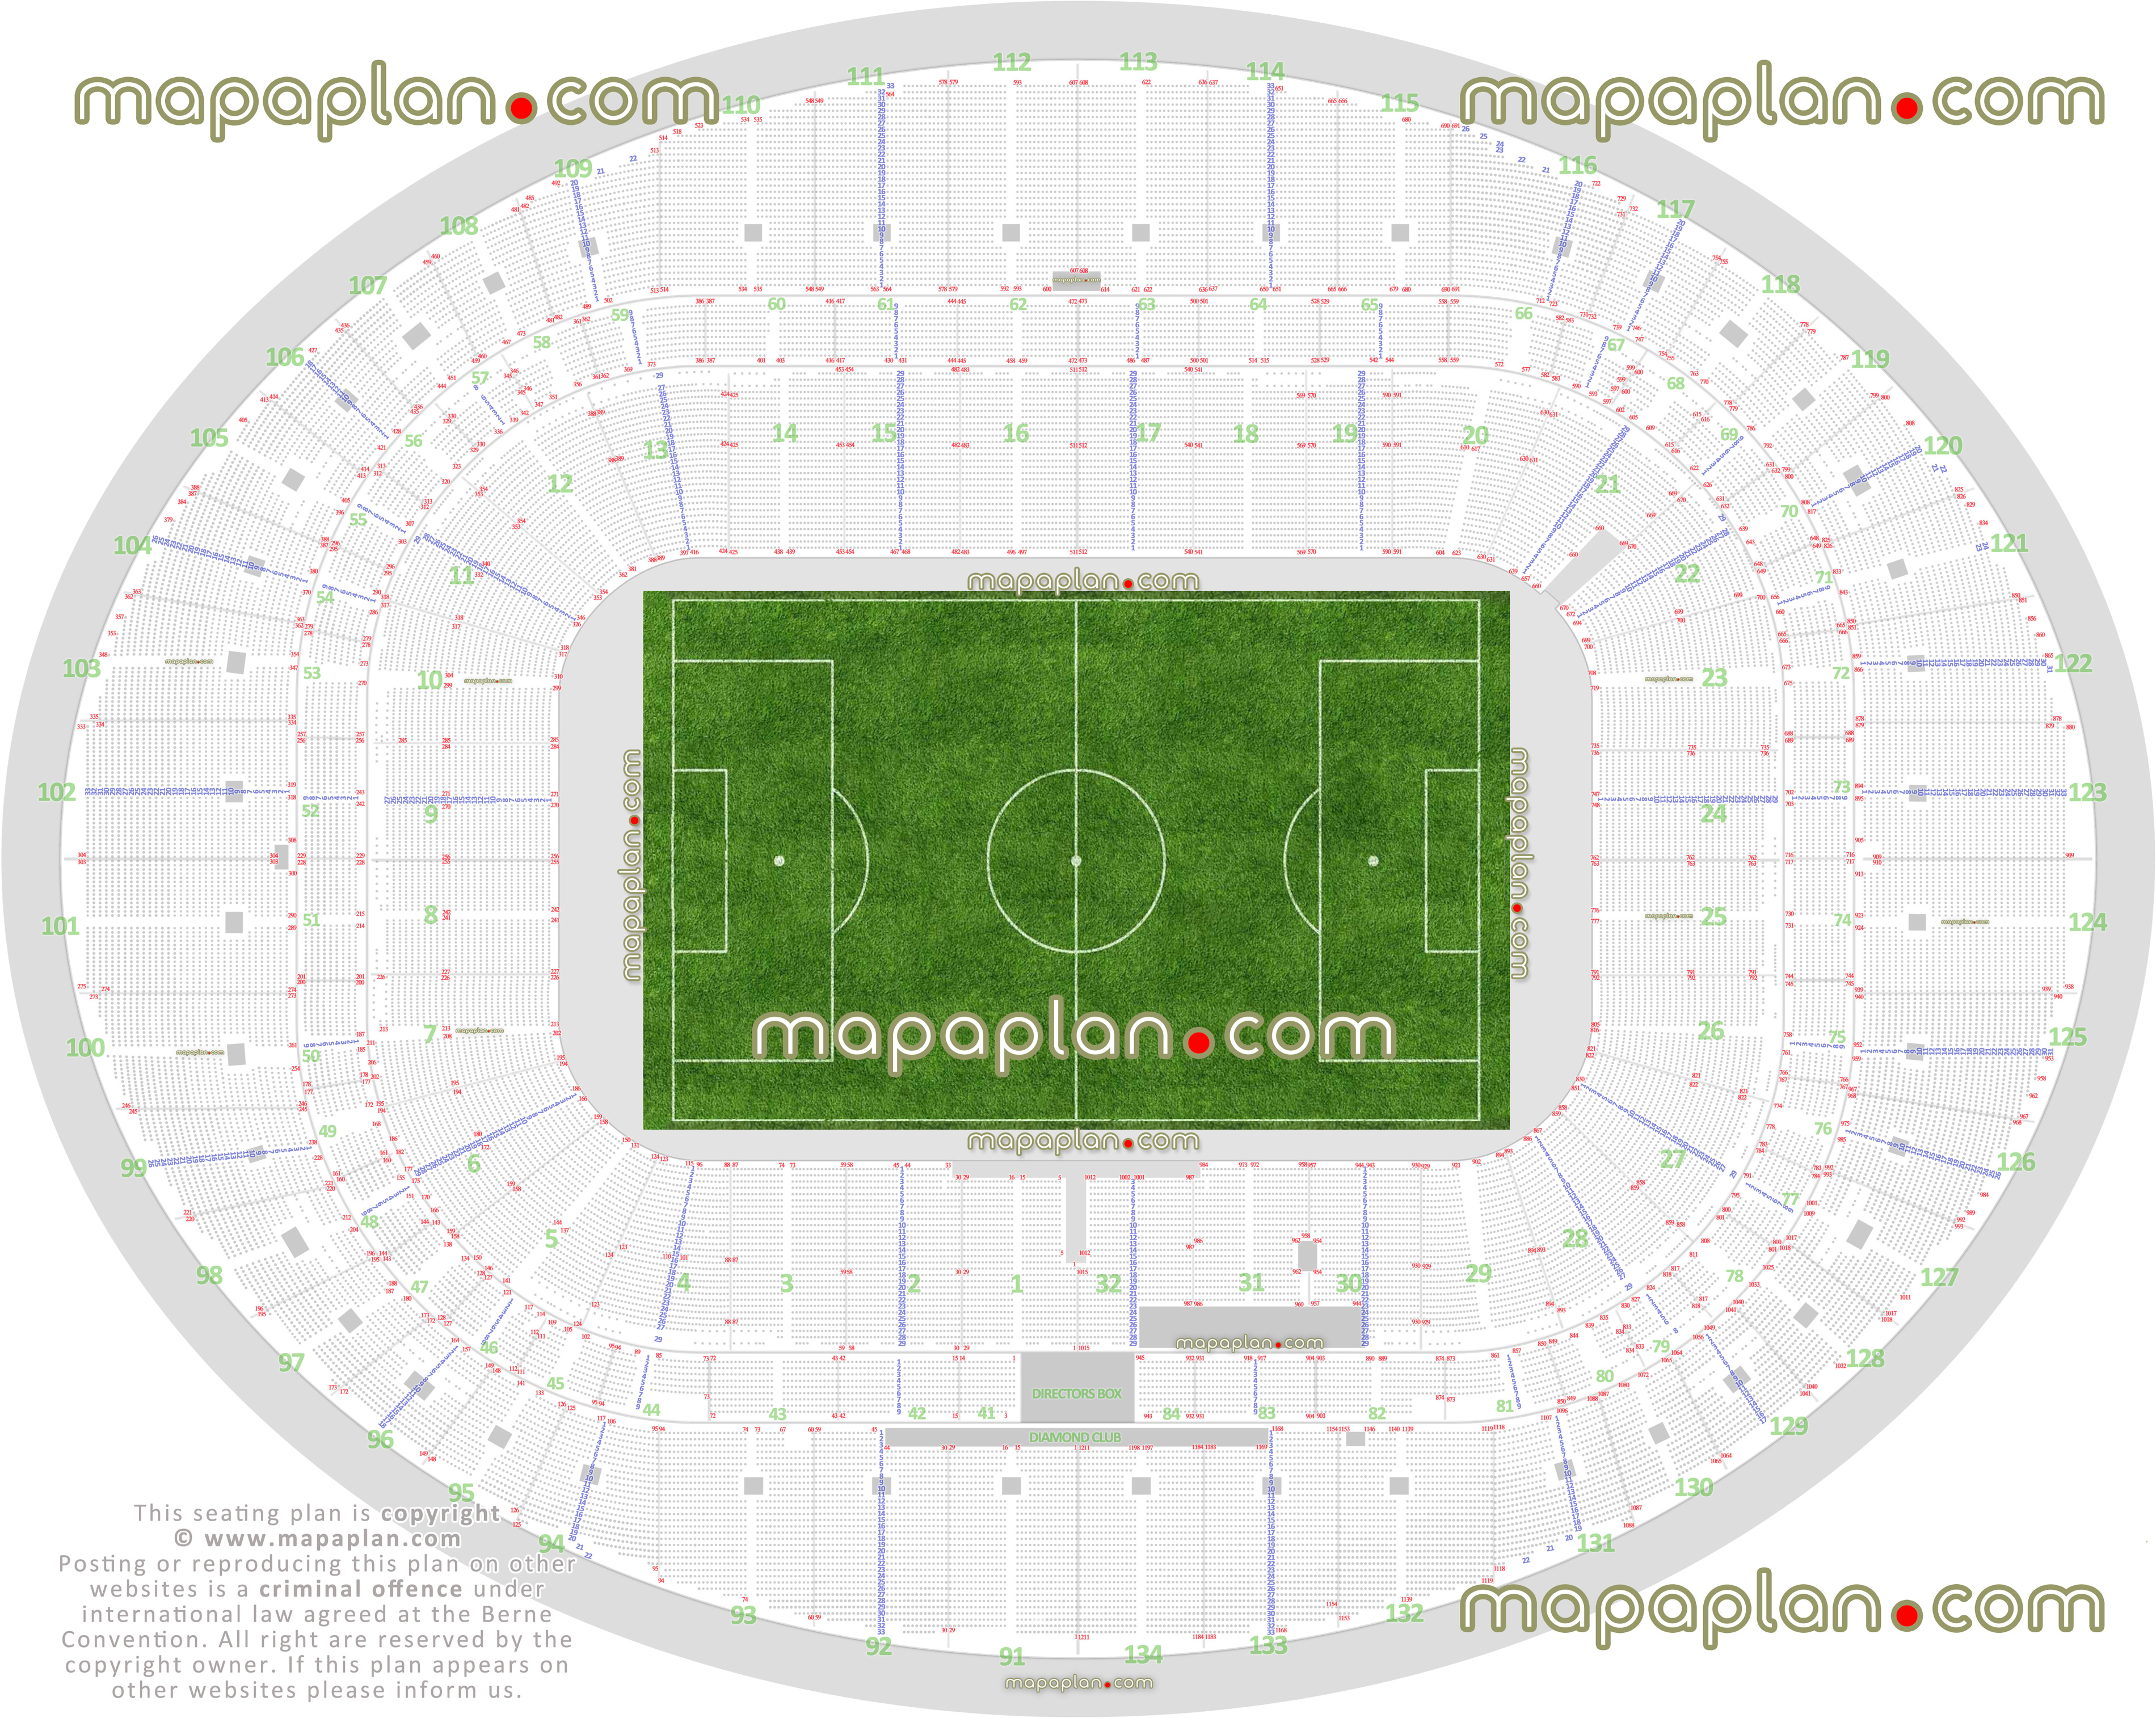 London Arsenal Emirates Stadium seating plan detailed seat numbers row numbering football plan blocks chart layout